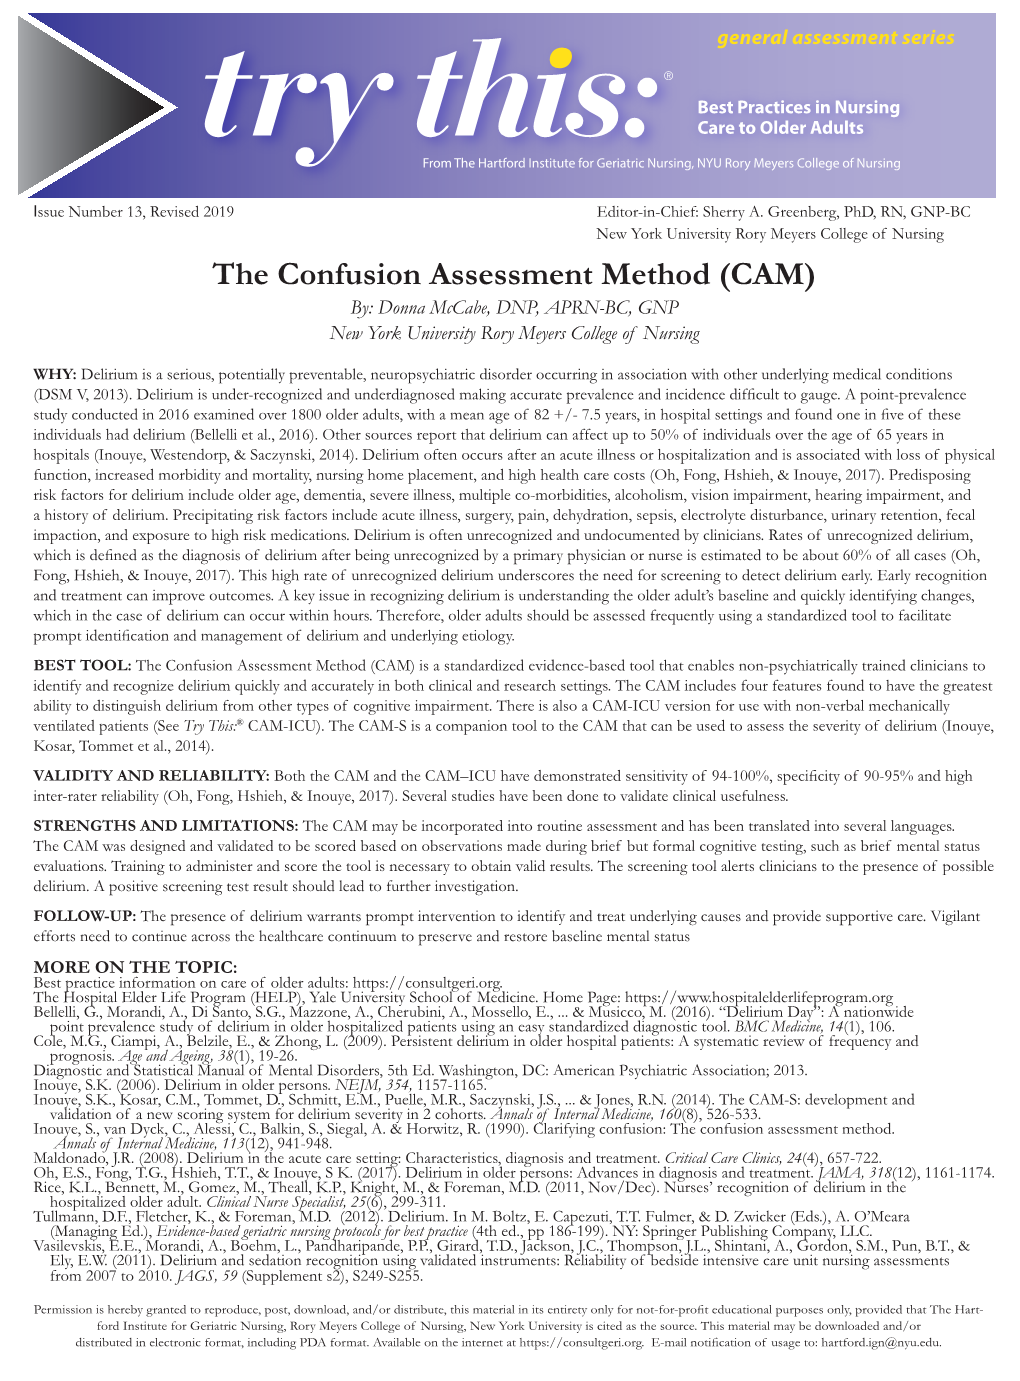 Delirium: the Confusion Assessment Method (CAM)